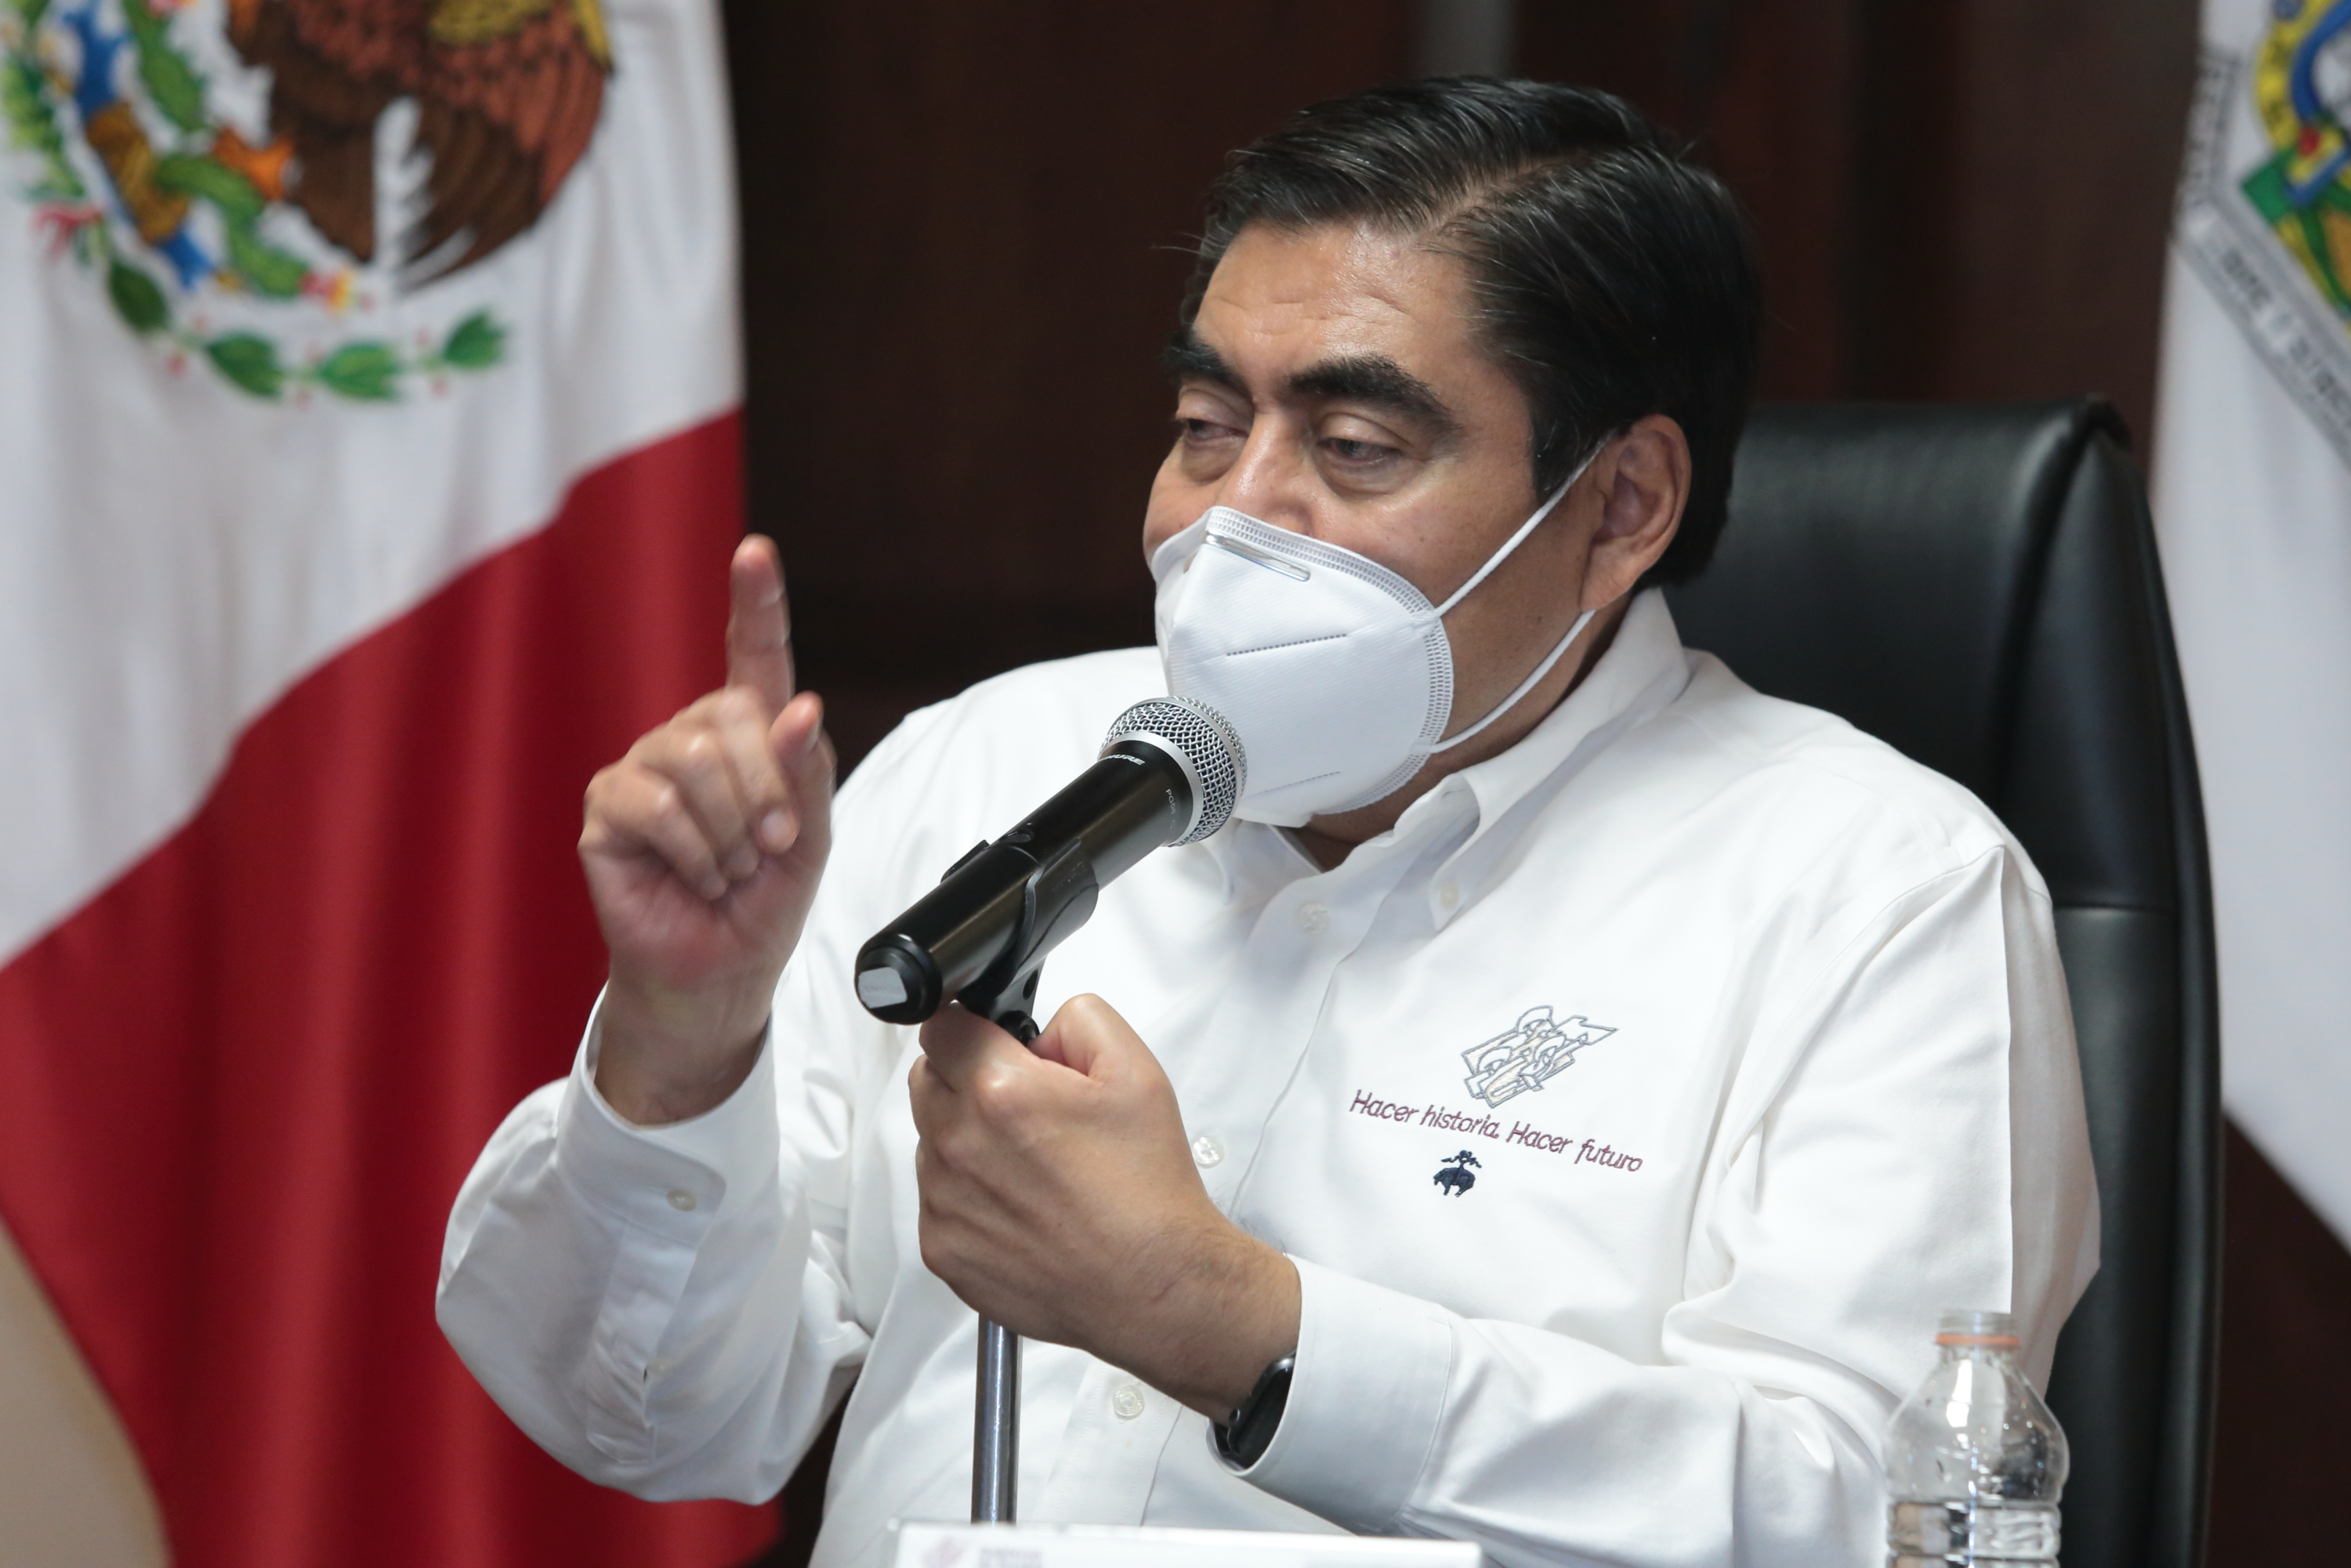 Hoy, el gobierno de Puebla sí combate la inseguridad con decisión, recursos y honestidad, subrayó Miguel Barbosa en su 2do Informe de labores